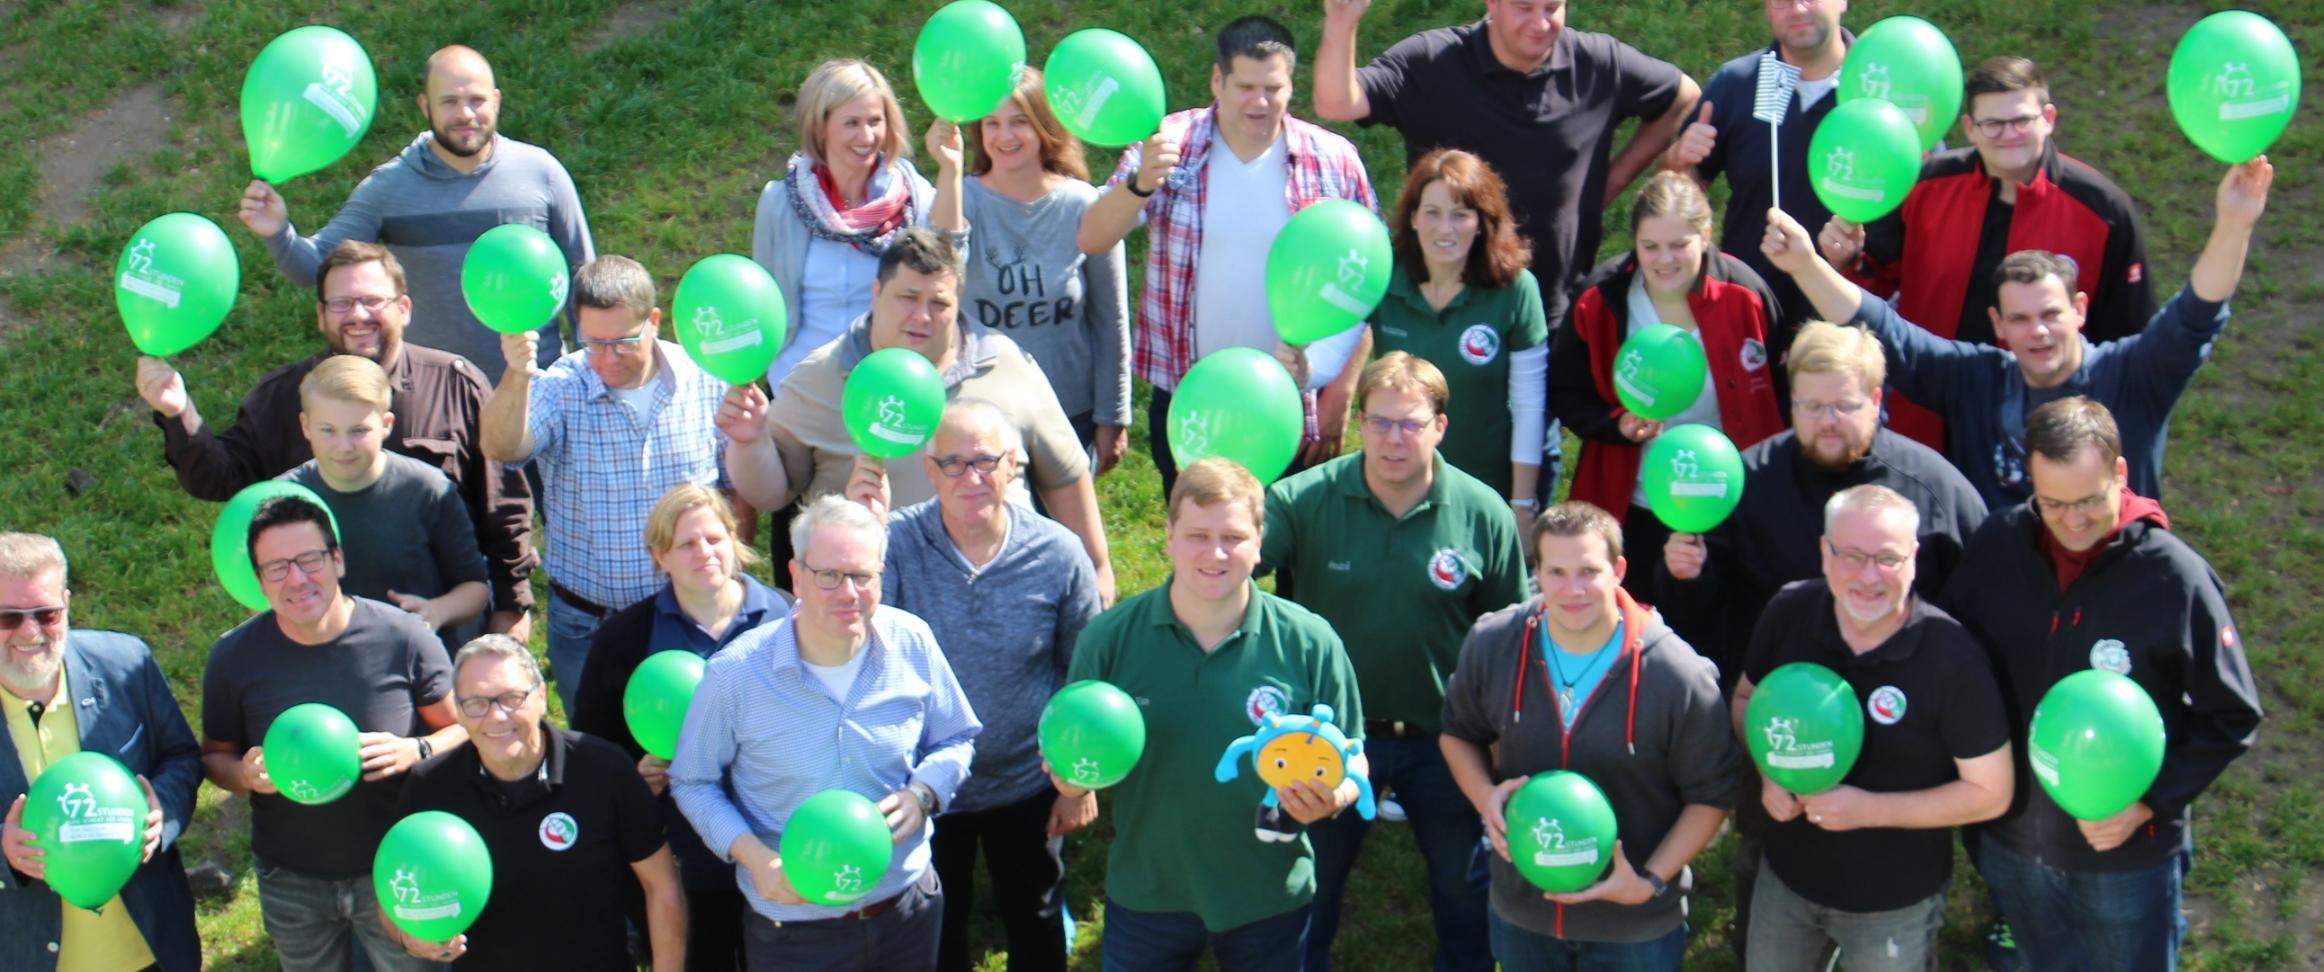 Mitglieder des BJR mit grünen Ballons in den Händen